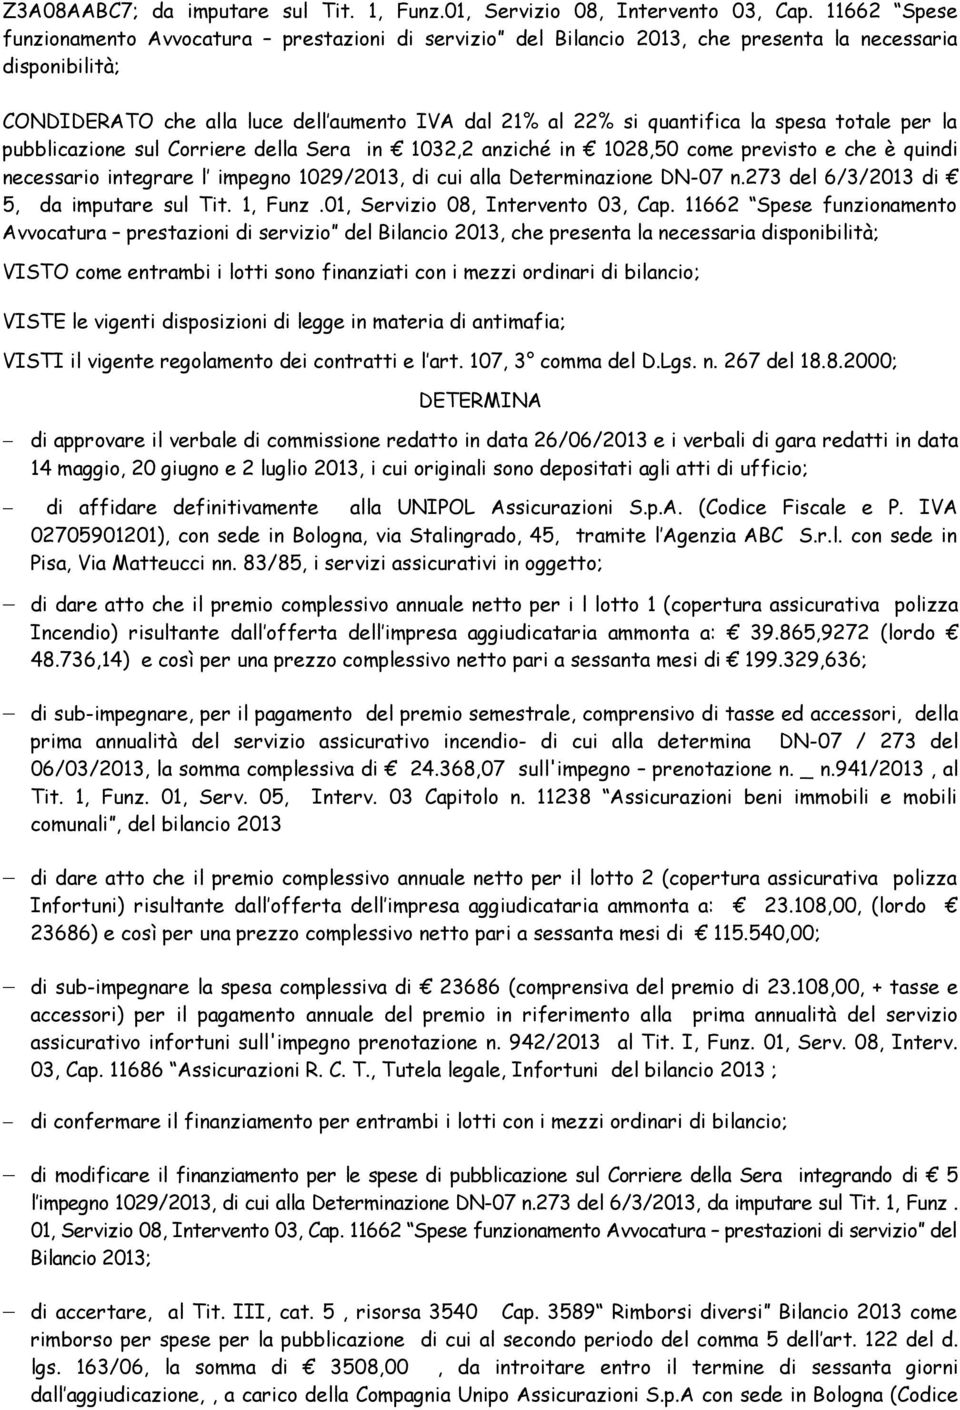 spesa totale per la pubblicazione sul Corriere della Sera in 1032,2 anziché in 1028,50 come previsto e che è quindi necessario integrare l impegno 1029/2013, di cui alla Determinazione DN-07 n.